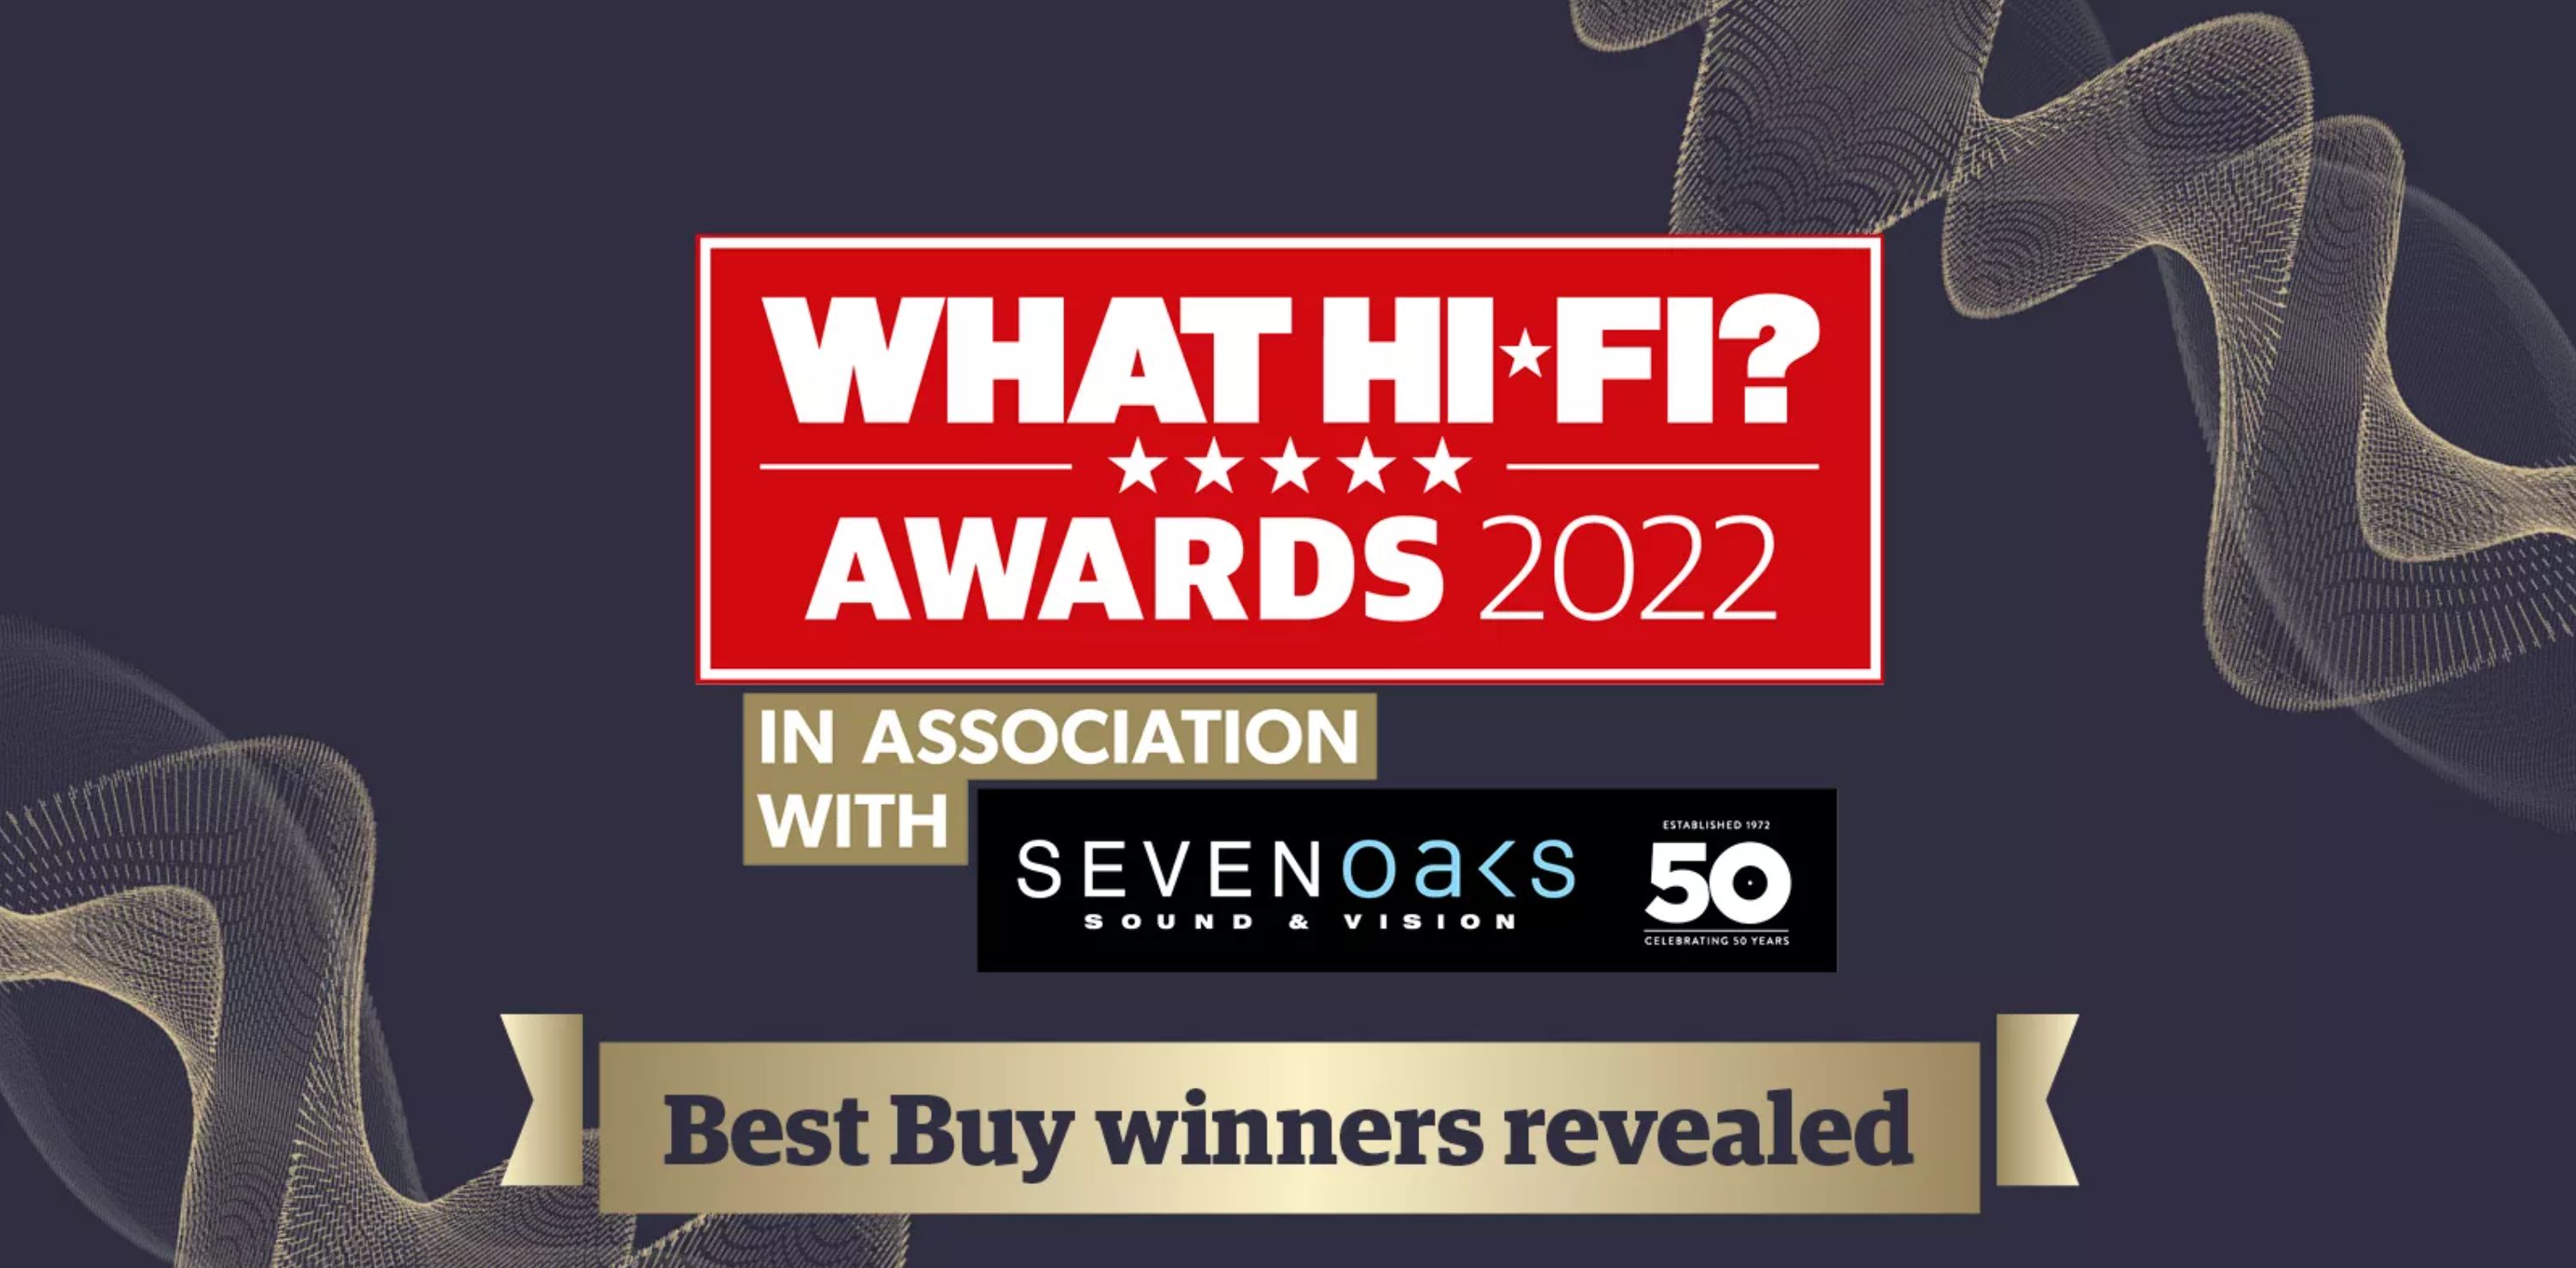 What Hi-Fi? Awards - 2022 - här är vinnarna! 